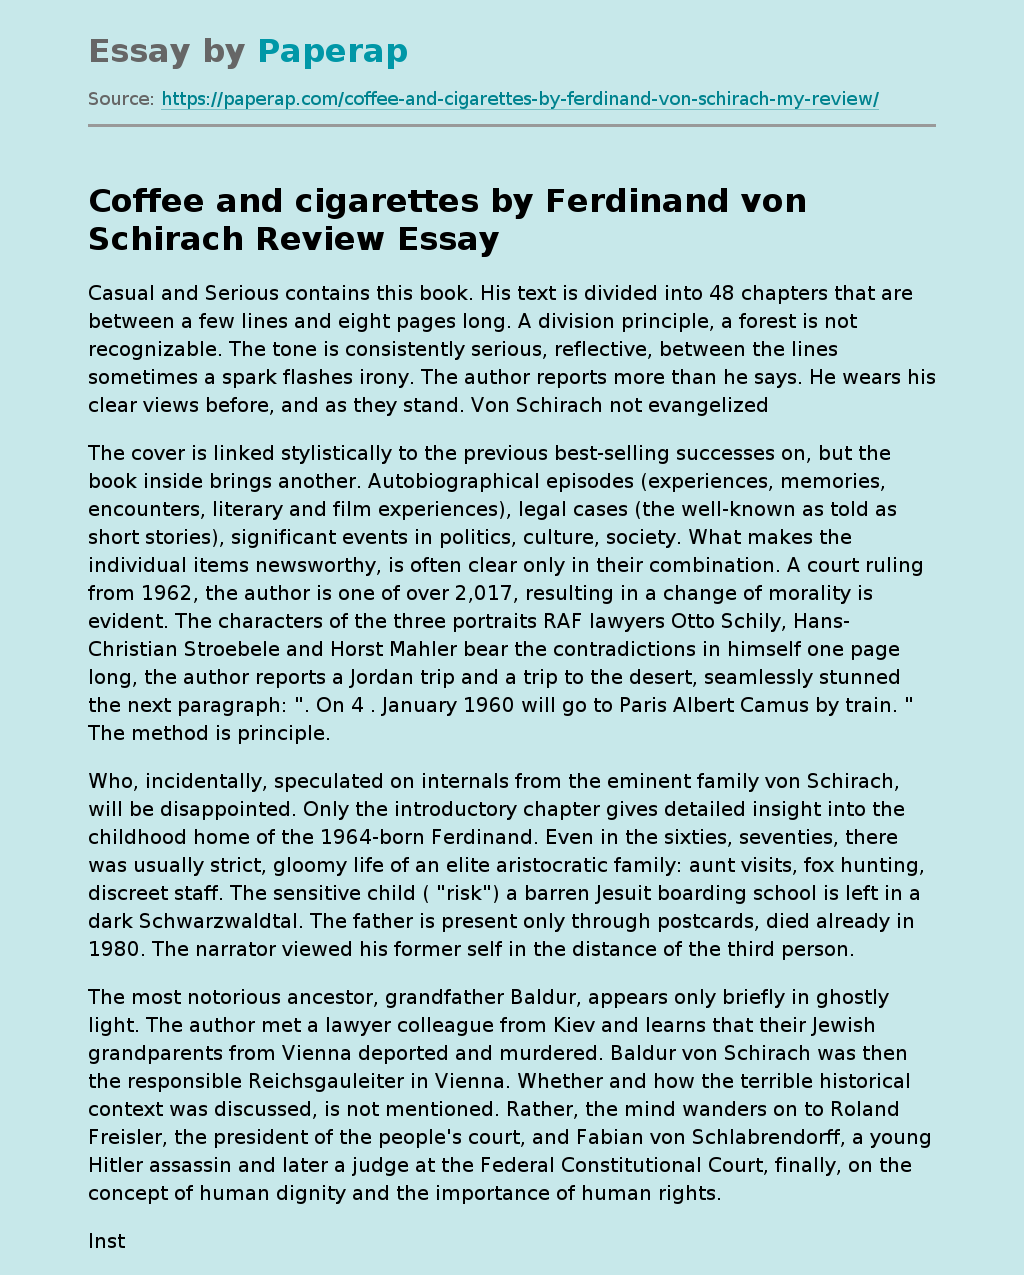 Coffee and cigarettes by Ferdinand von Schirach Review